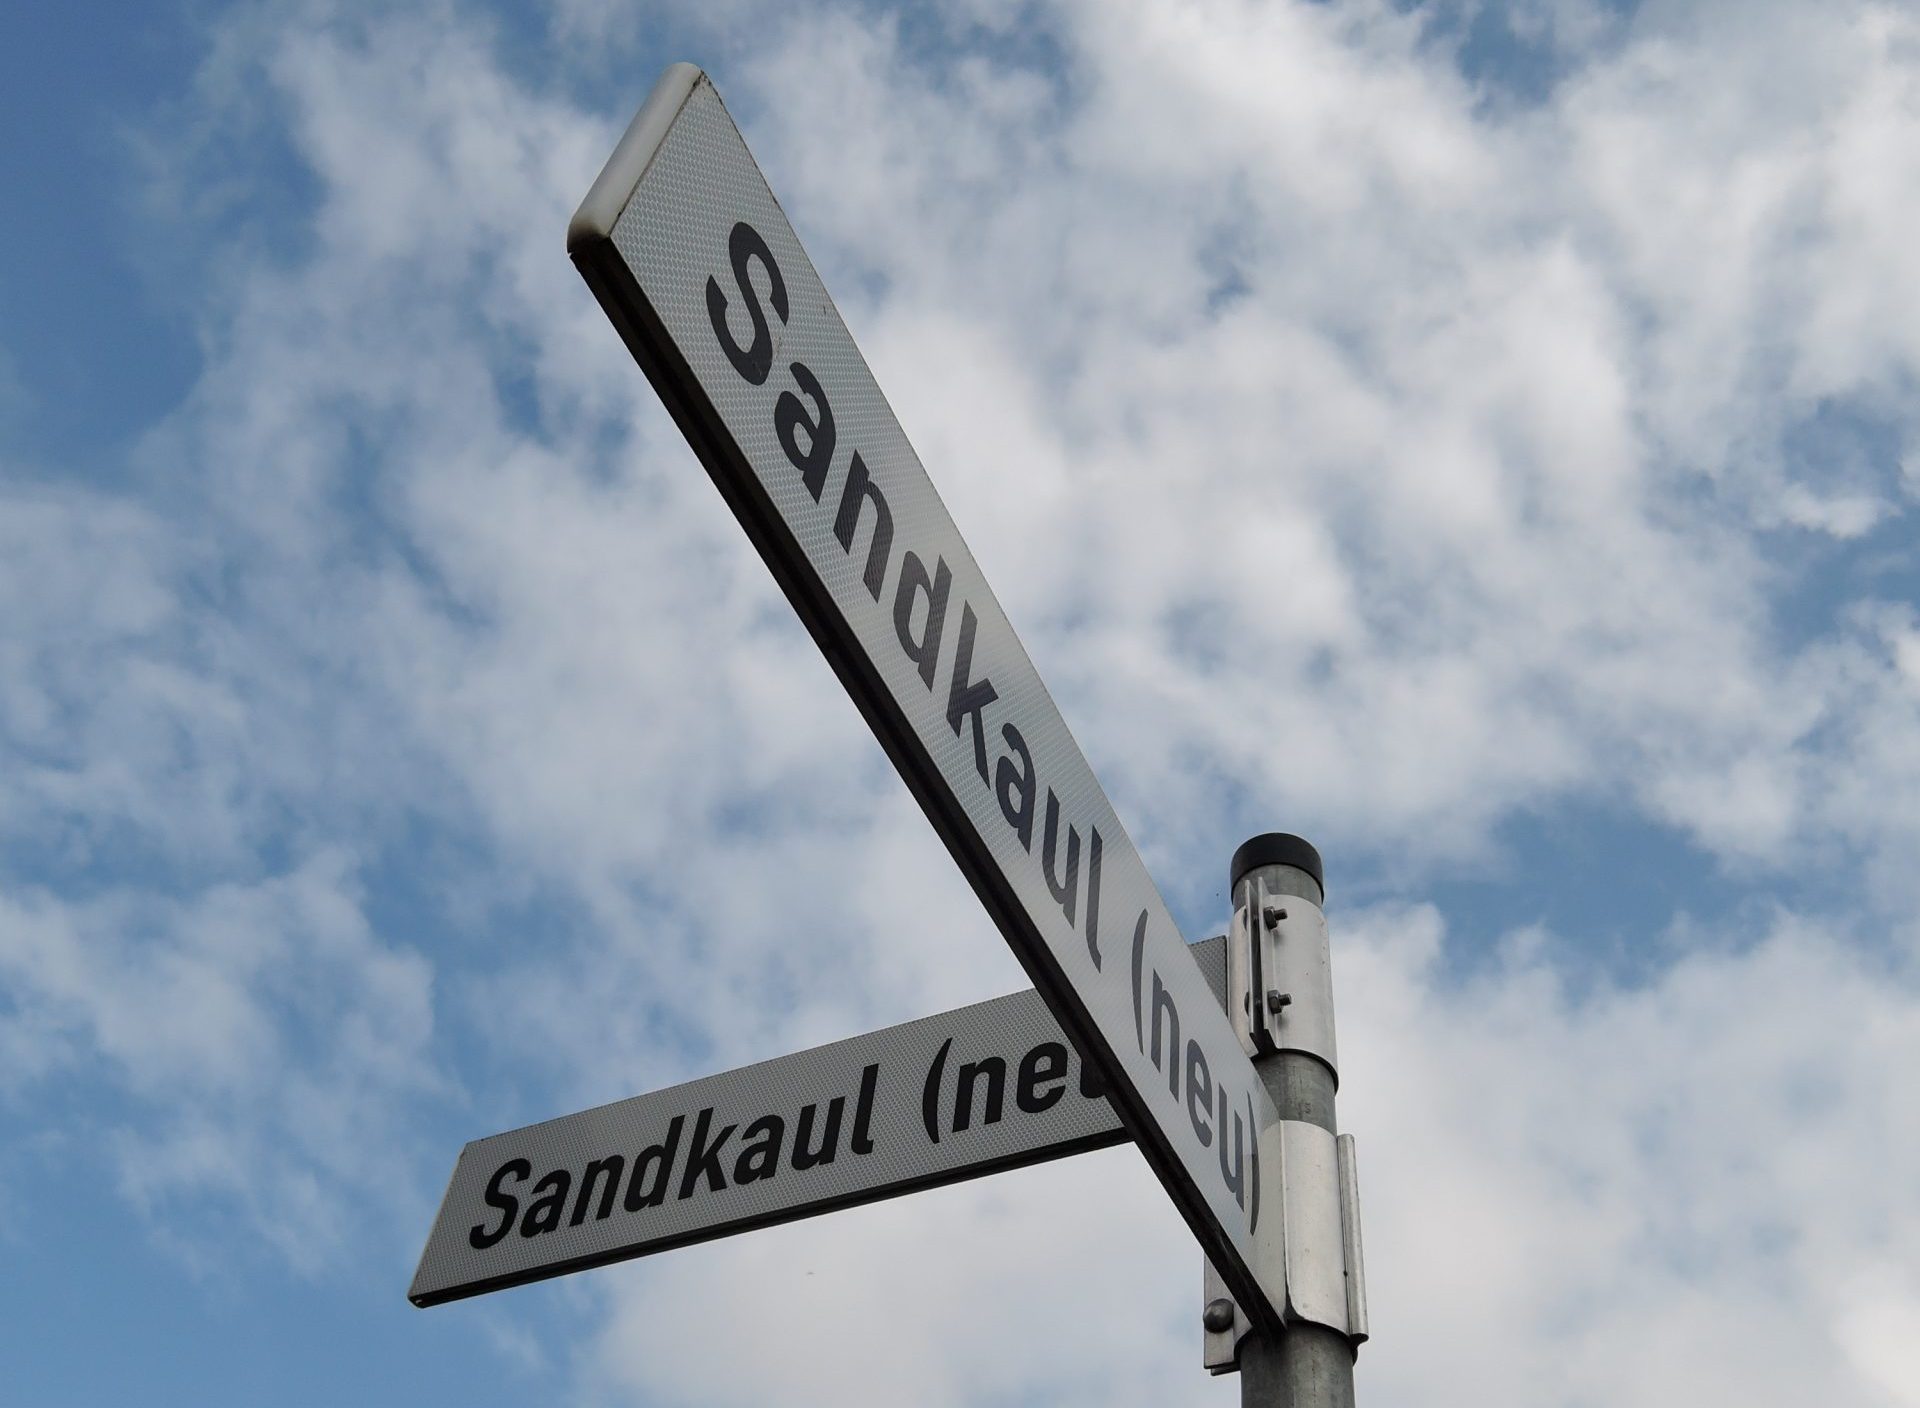 Straßenschild mit dem Namen "Sandkaul (neu)". Im Hintergrund ist ein blauer Himmel mit weißen Wolken zu sehen.